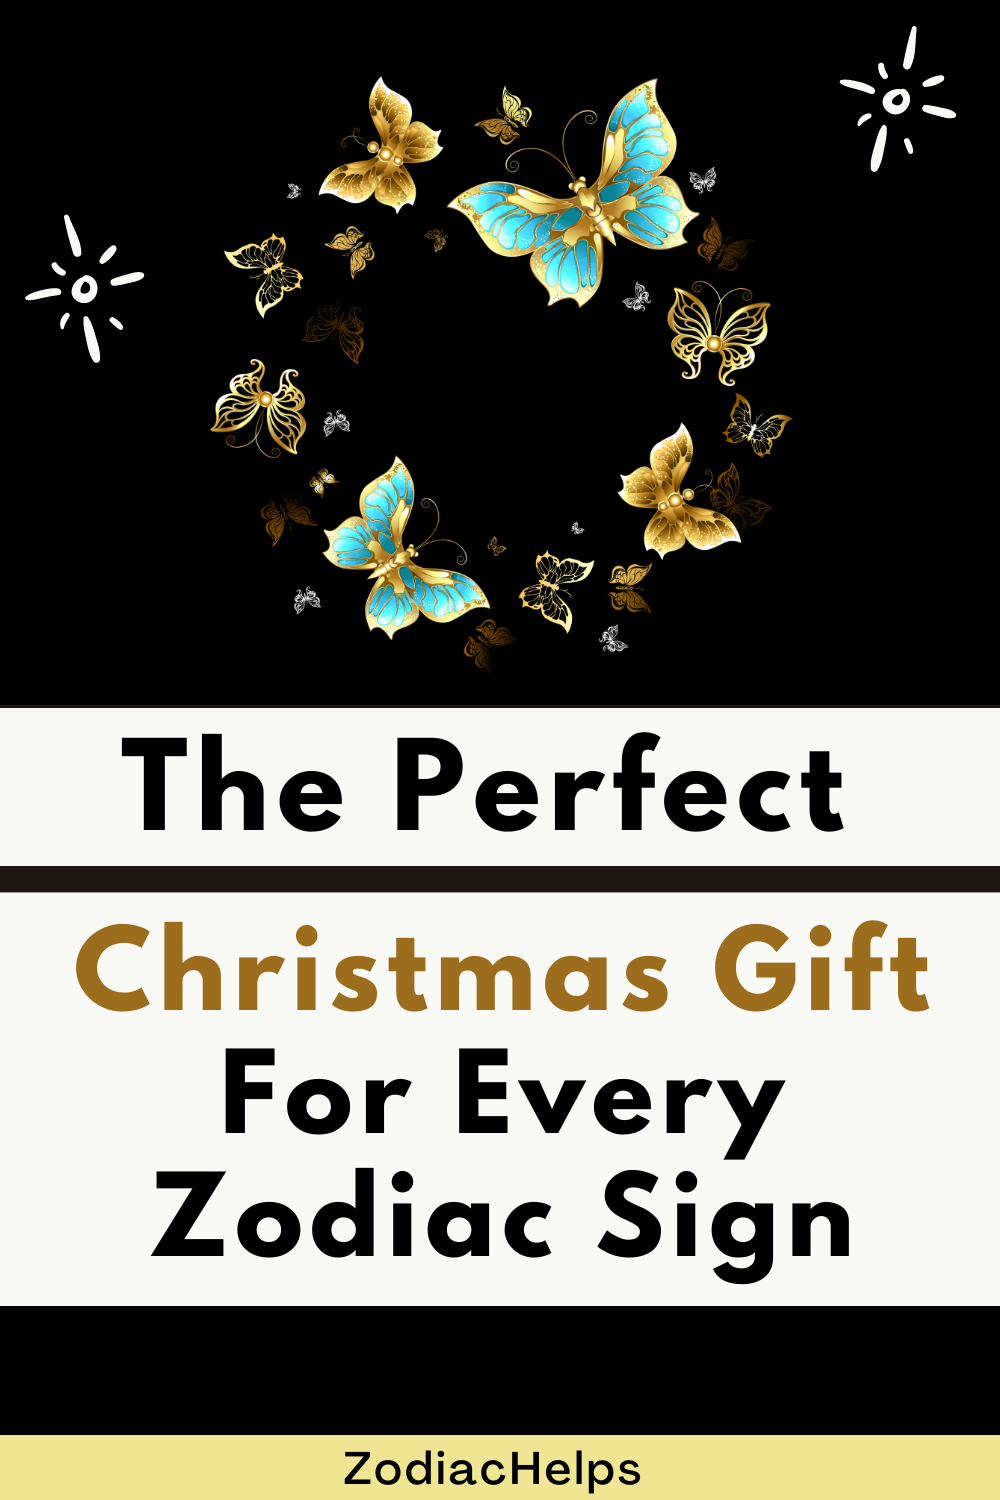 Cadoul perfect de Crăciun pentru fiecare semn zodiacal